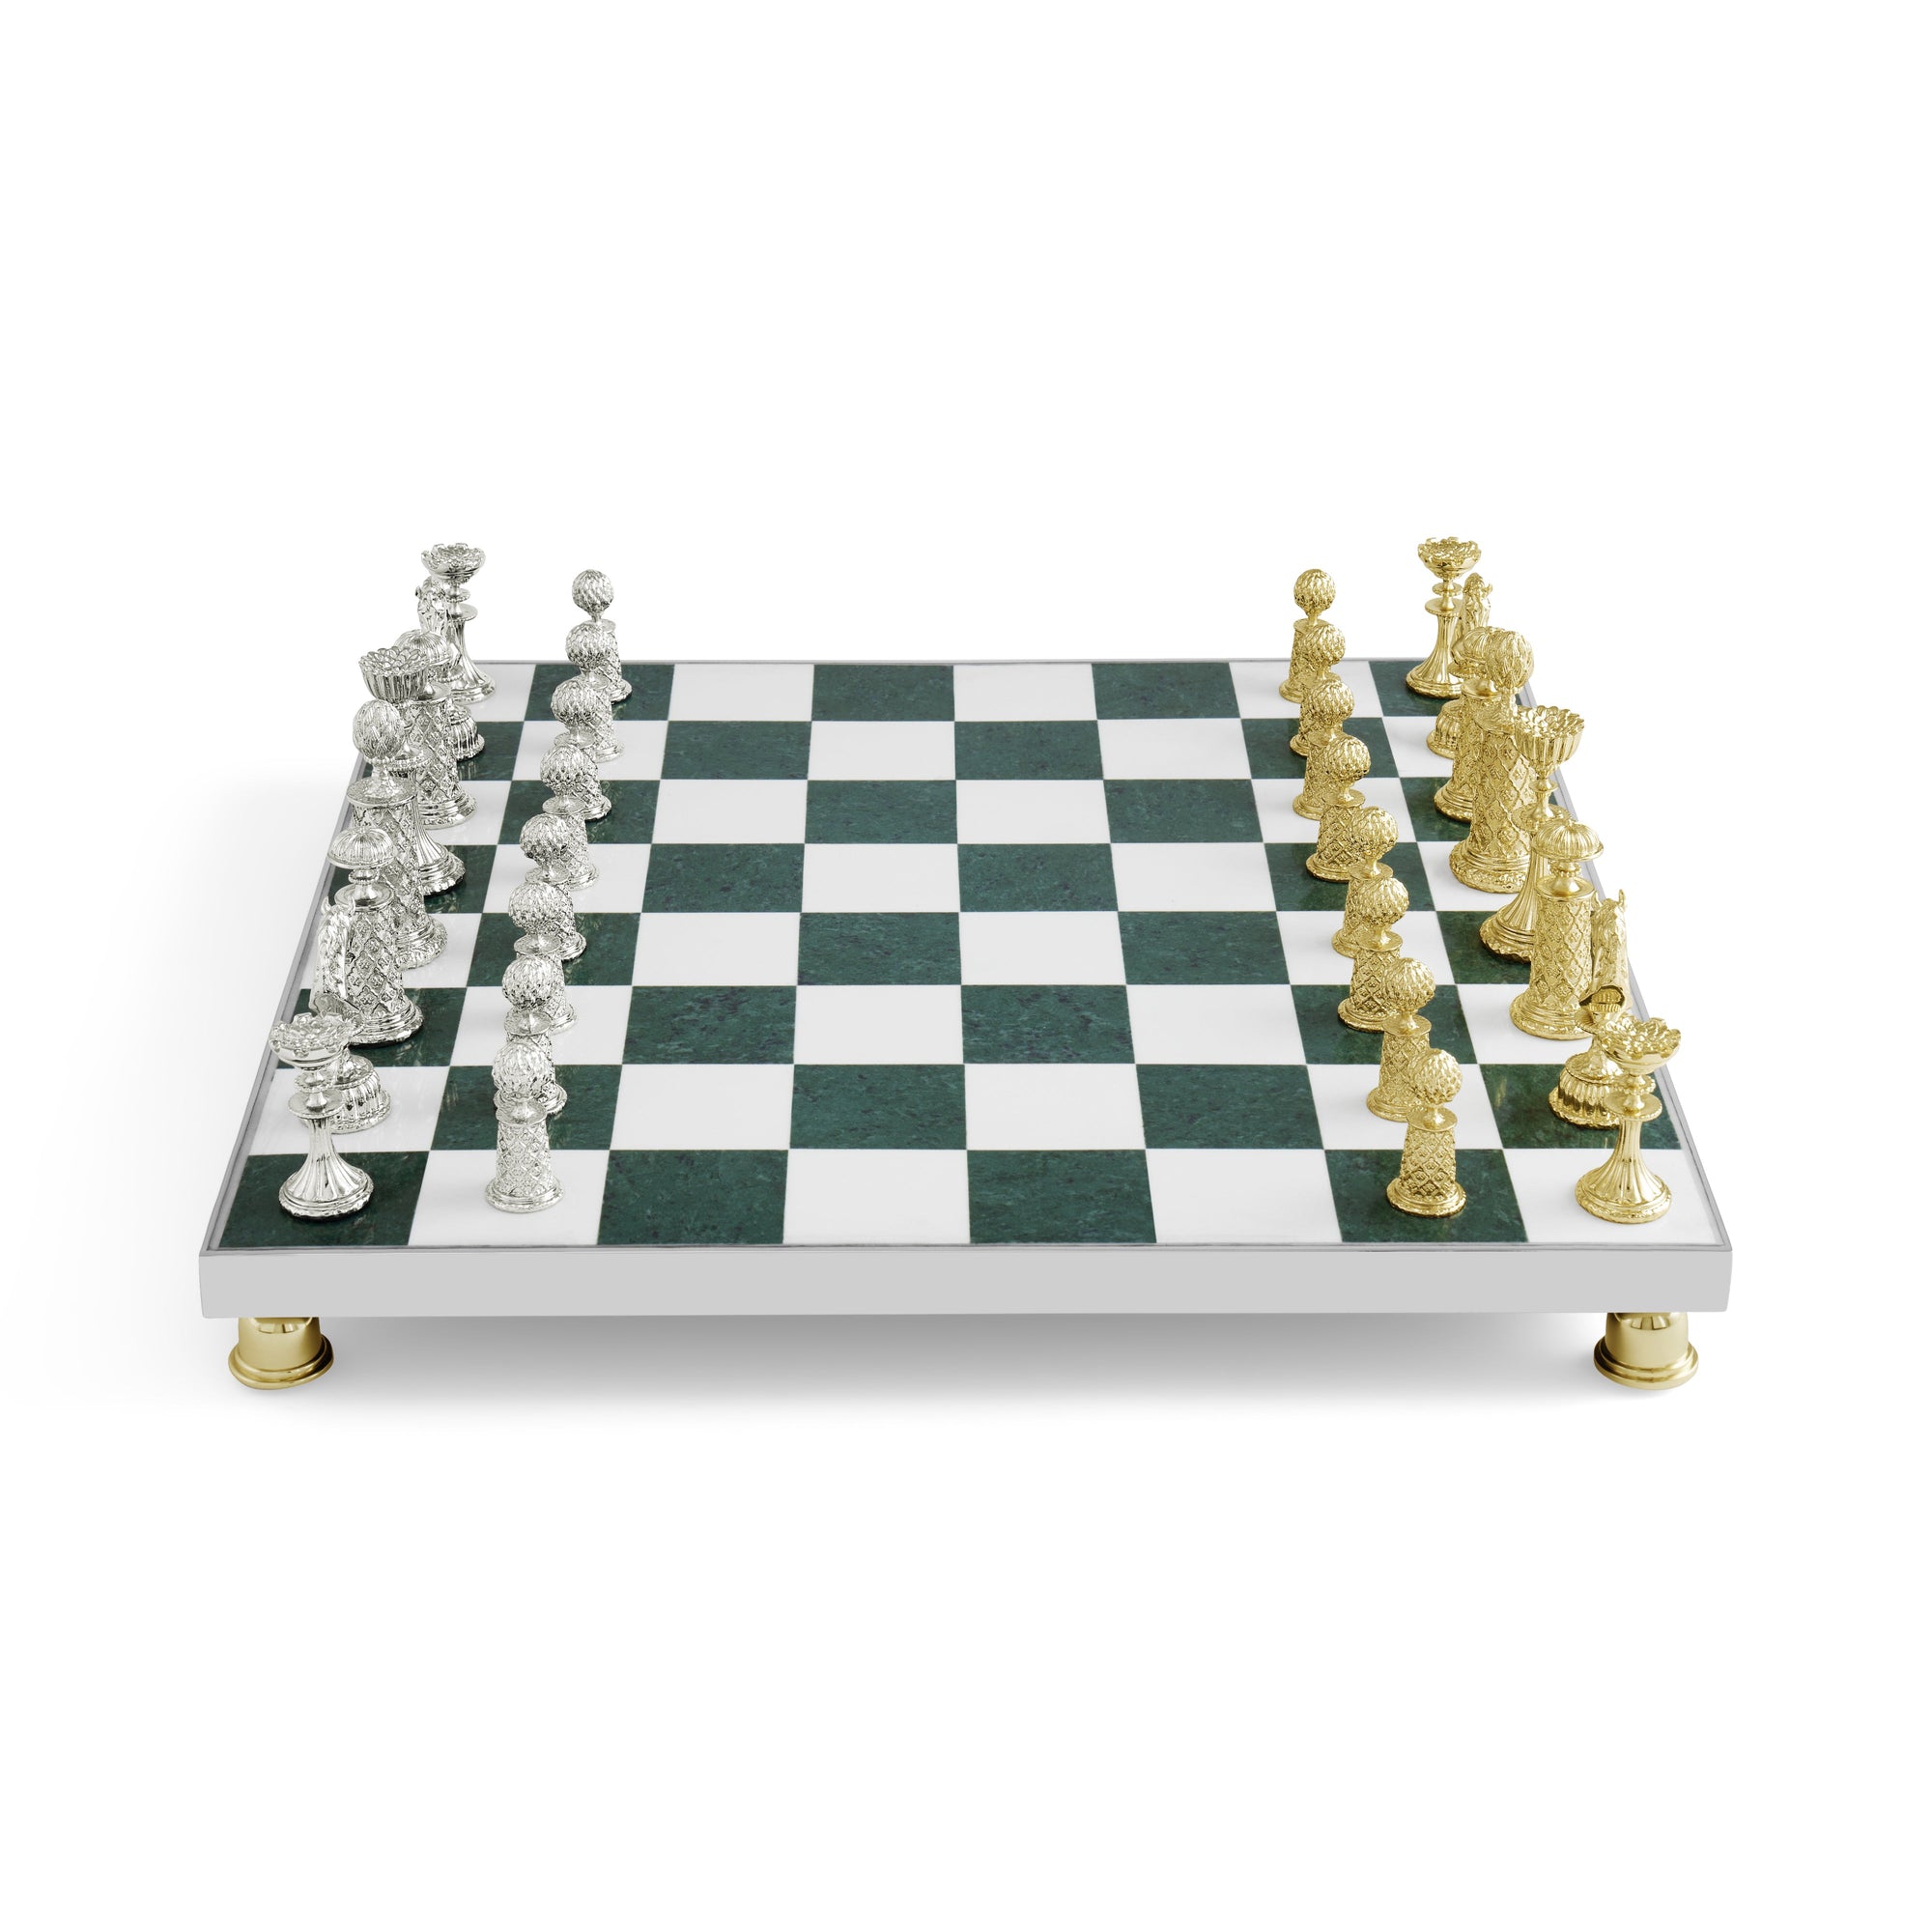 Michael Aram Palace Chess Set